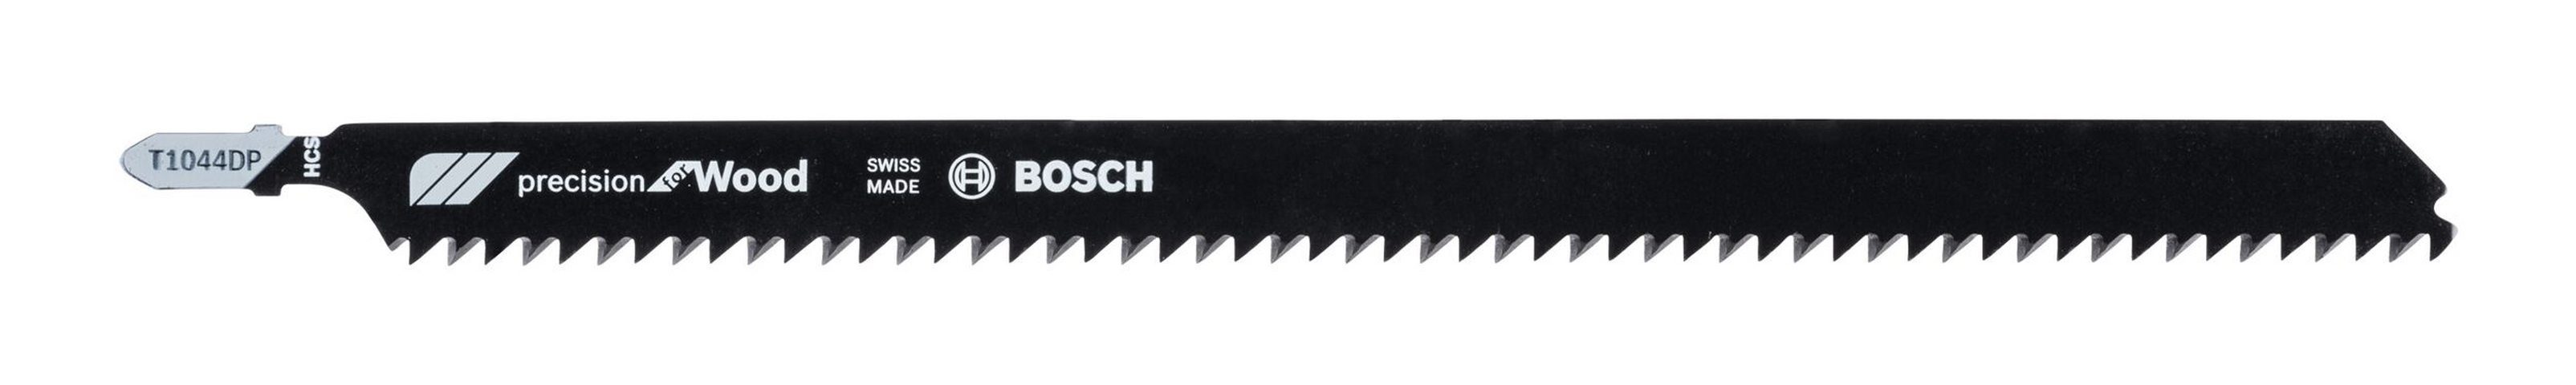 Wood 3er-Pack for BOSCH 1044 (3 T - DP Stück), Precision Stichsägeblatt